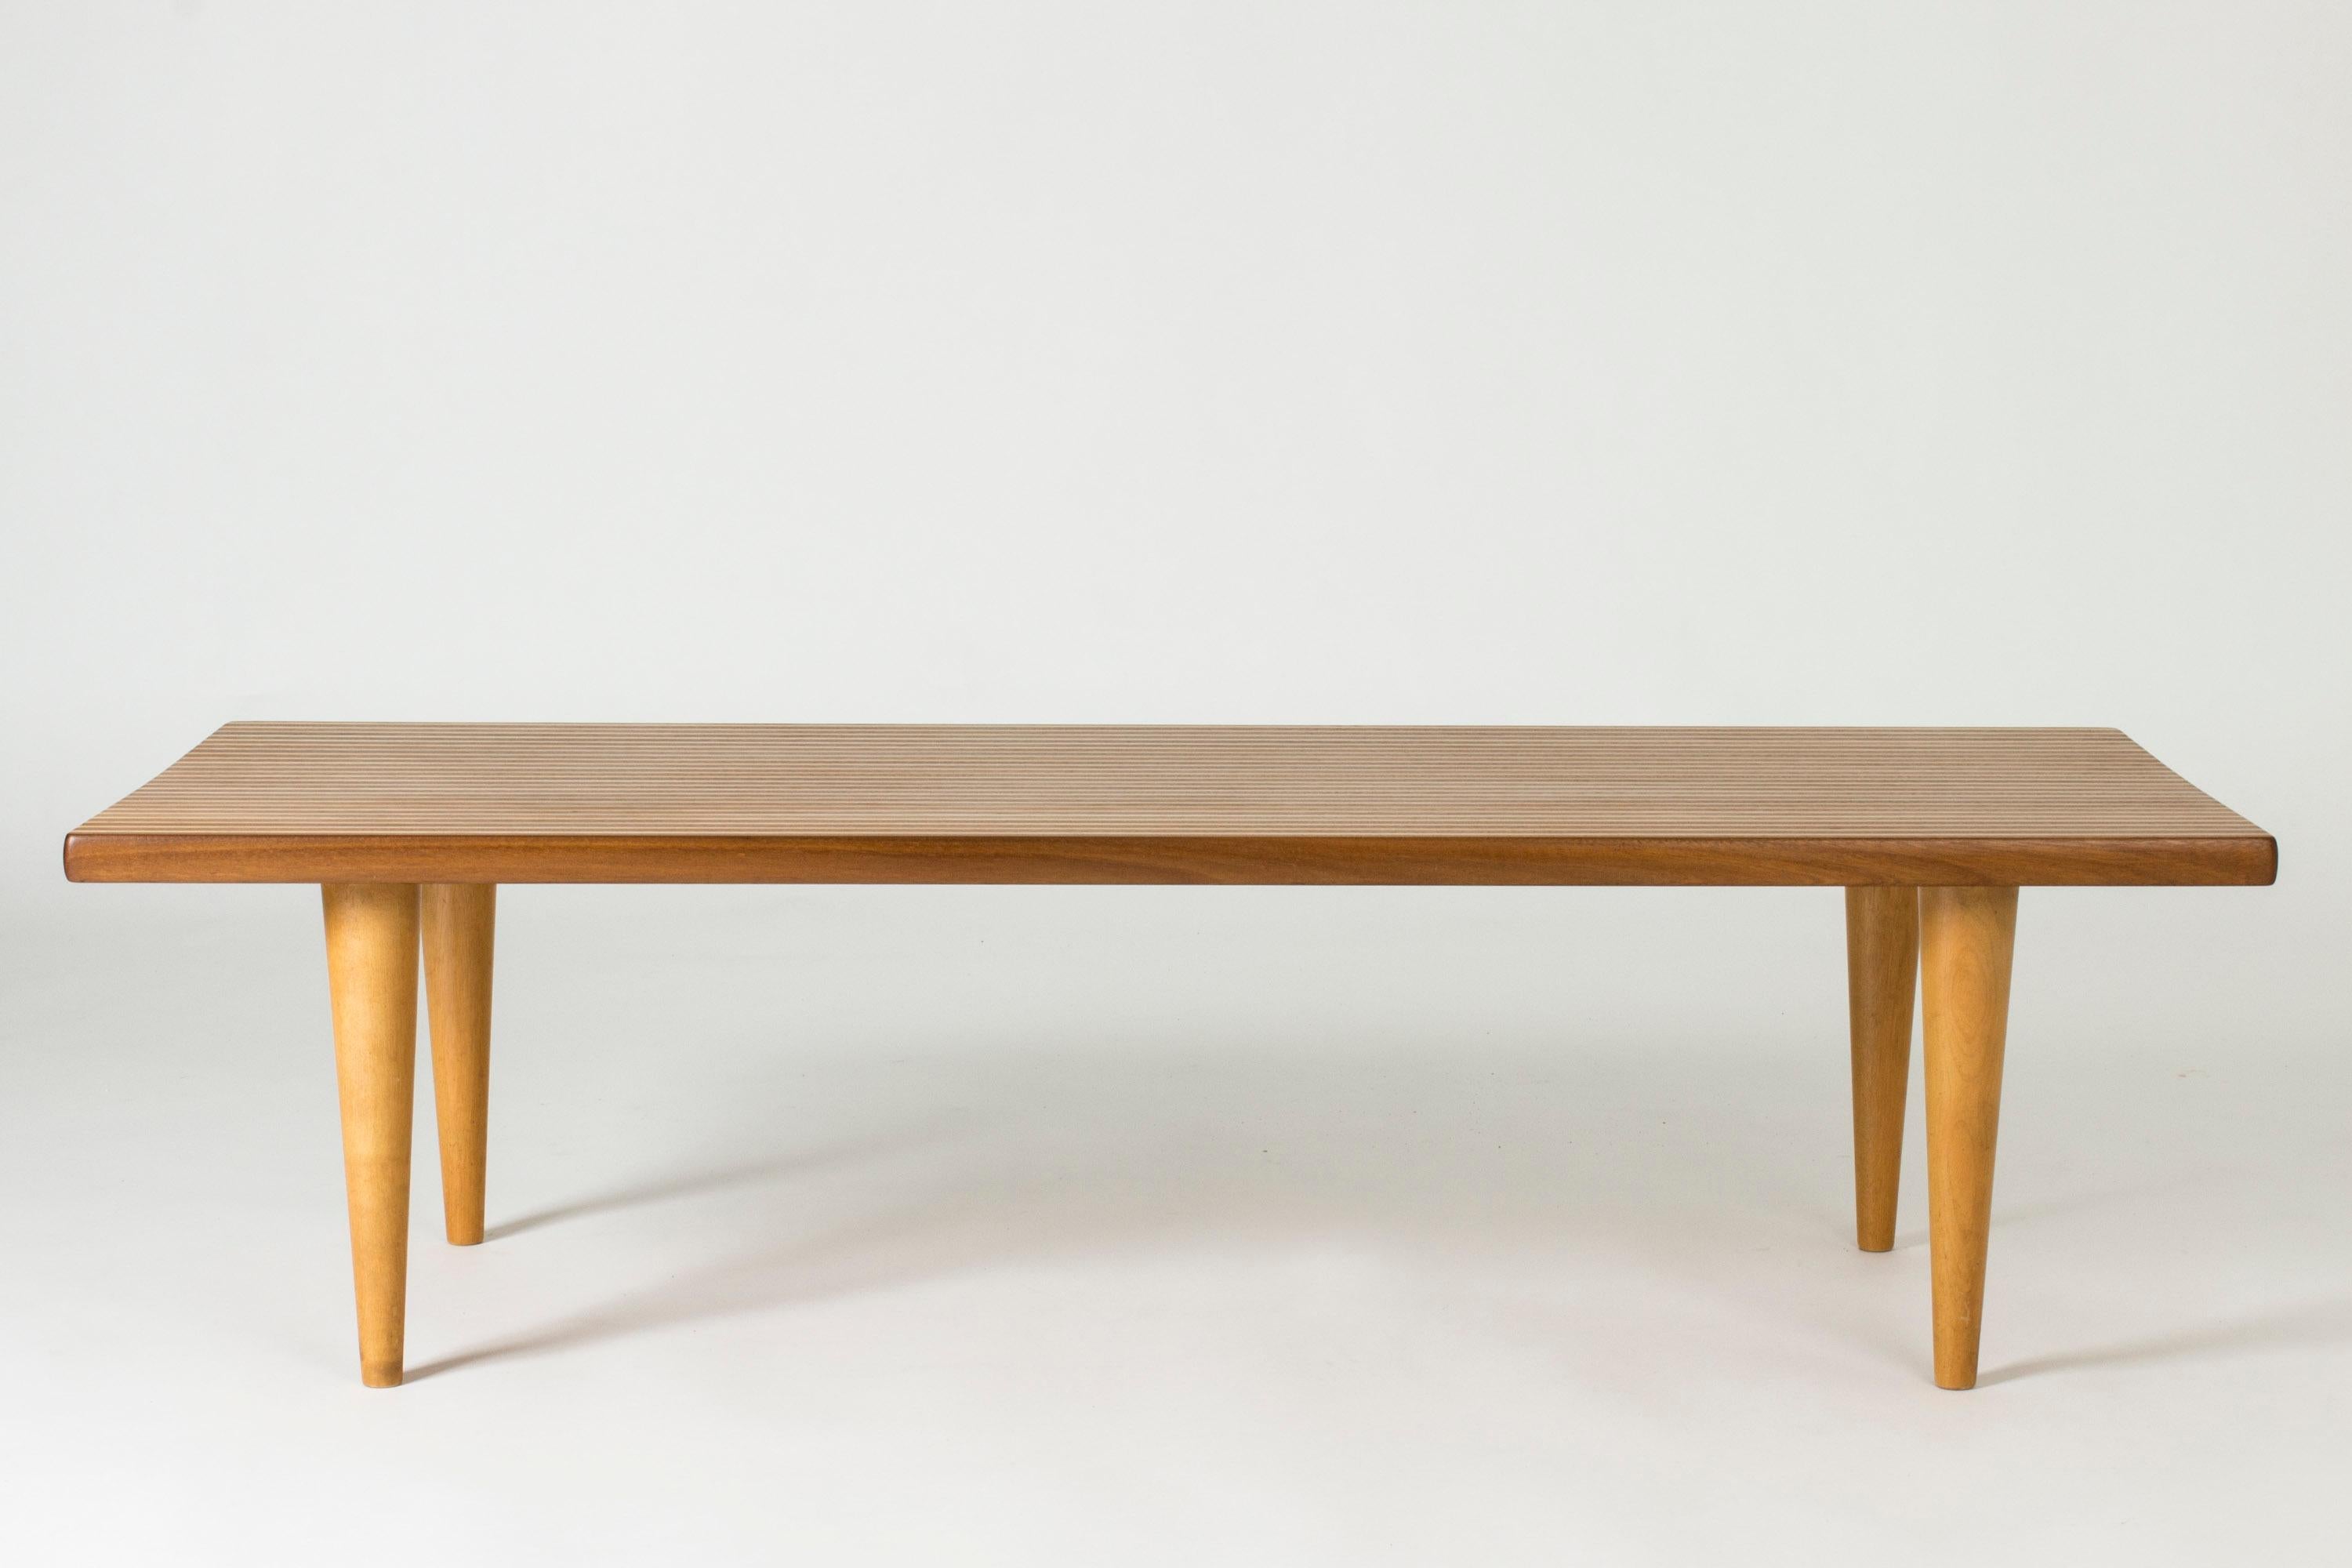 Étonnante table basse de Yngvar Sandström, au motif rayé créé par l'alternance de teck et de bouleau dans le plateau en bois massif. Un motif très cool sur les petits côtés.